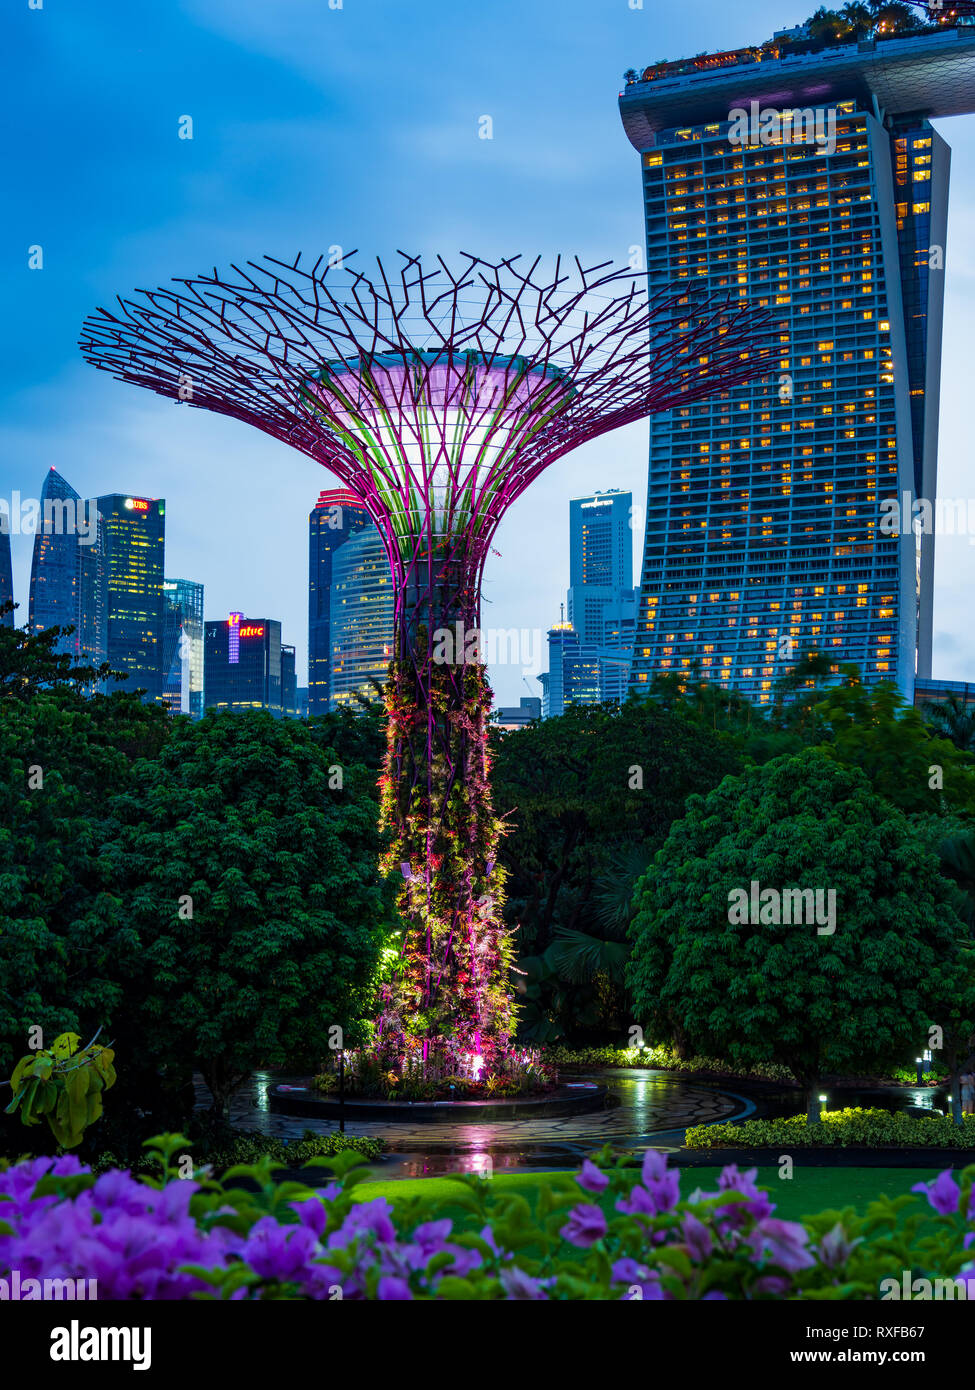 La città di Singapore, Singapore - Febbraio 03, 2019: giardini dalla baia di Singapore, unico i giardini verticali che assomiglia torreggianti alberi, con grandi baldacchini Foto Stock